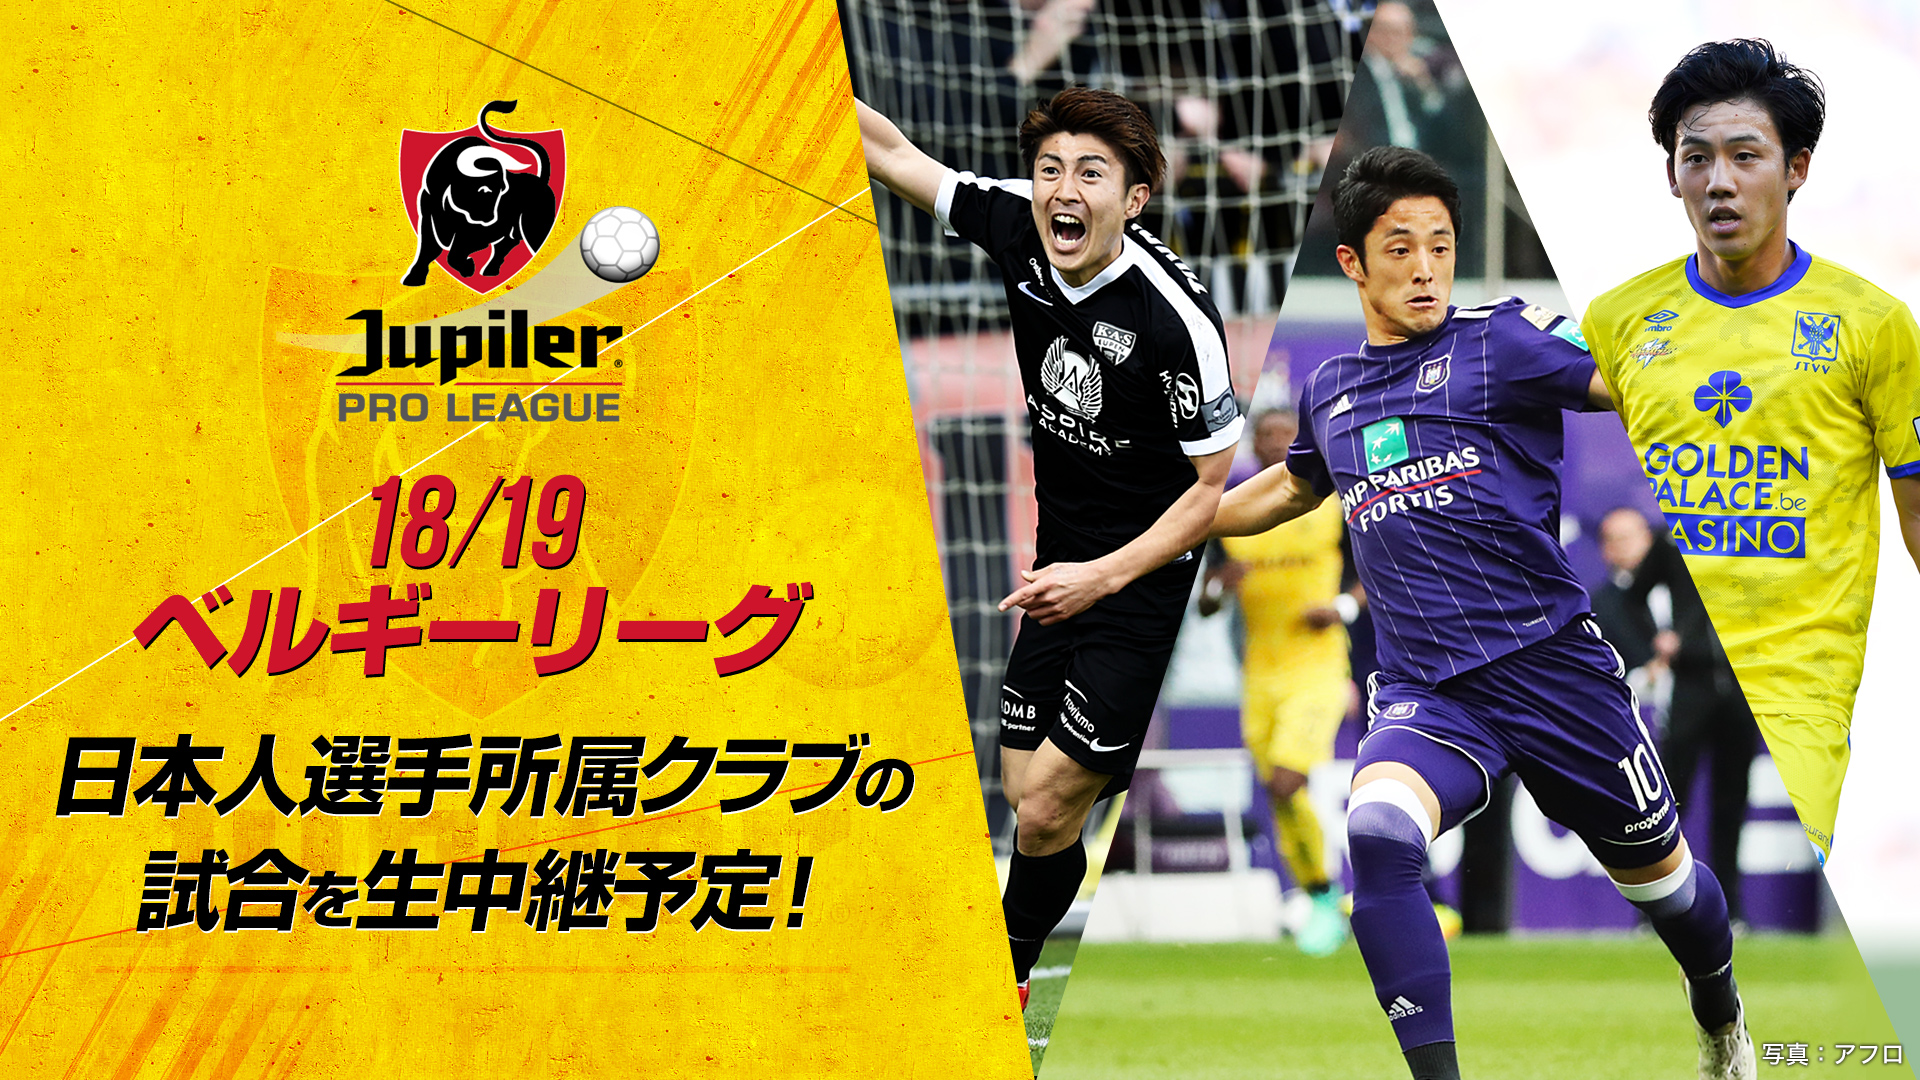 日本人選手5人所属 シントトロイデンのリーグ戦全試合放送決定 日本から世界へ パートナーシップ締結 お知らせ スカパー サッカー放送